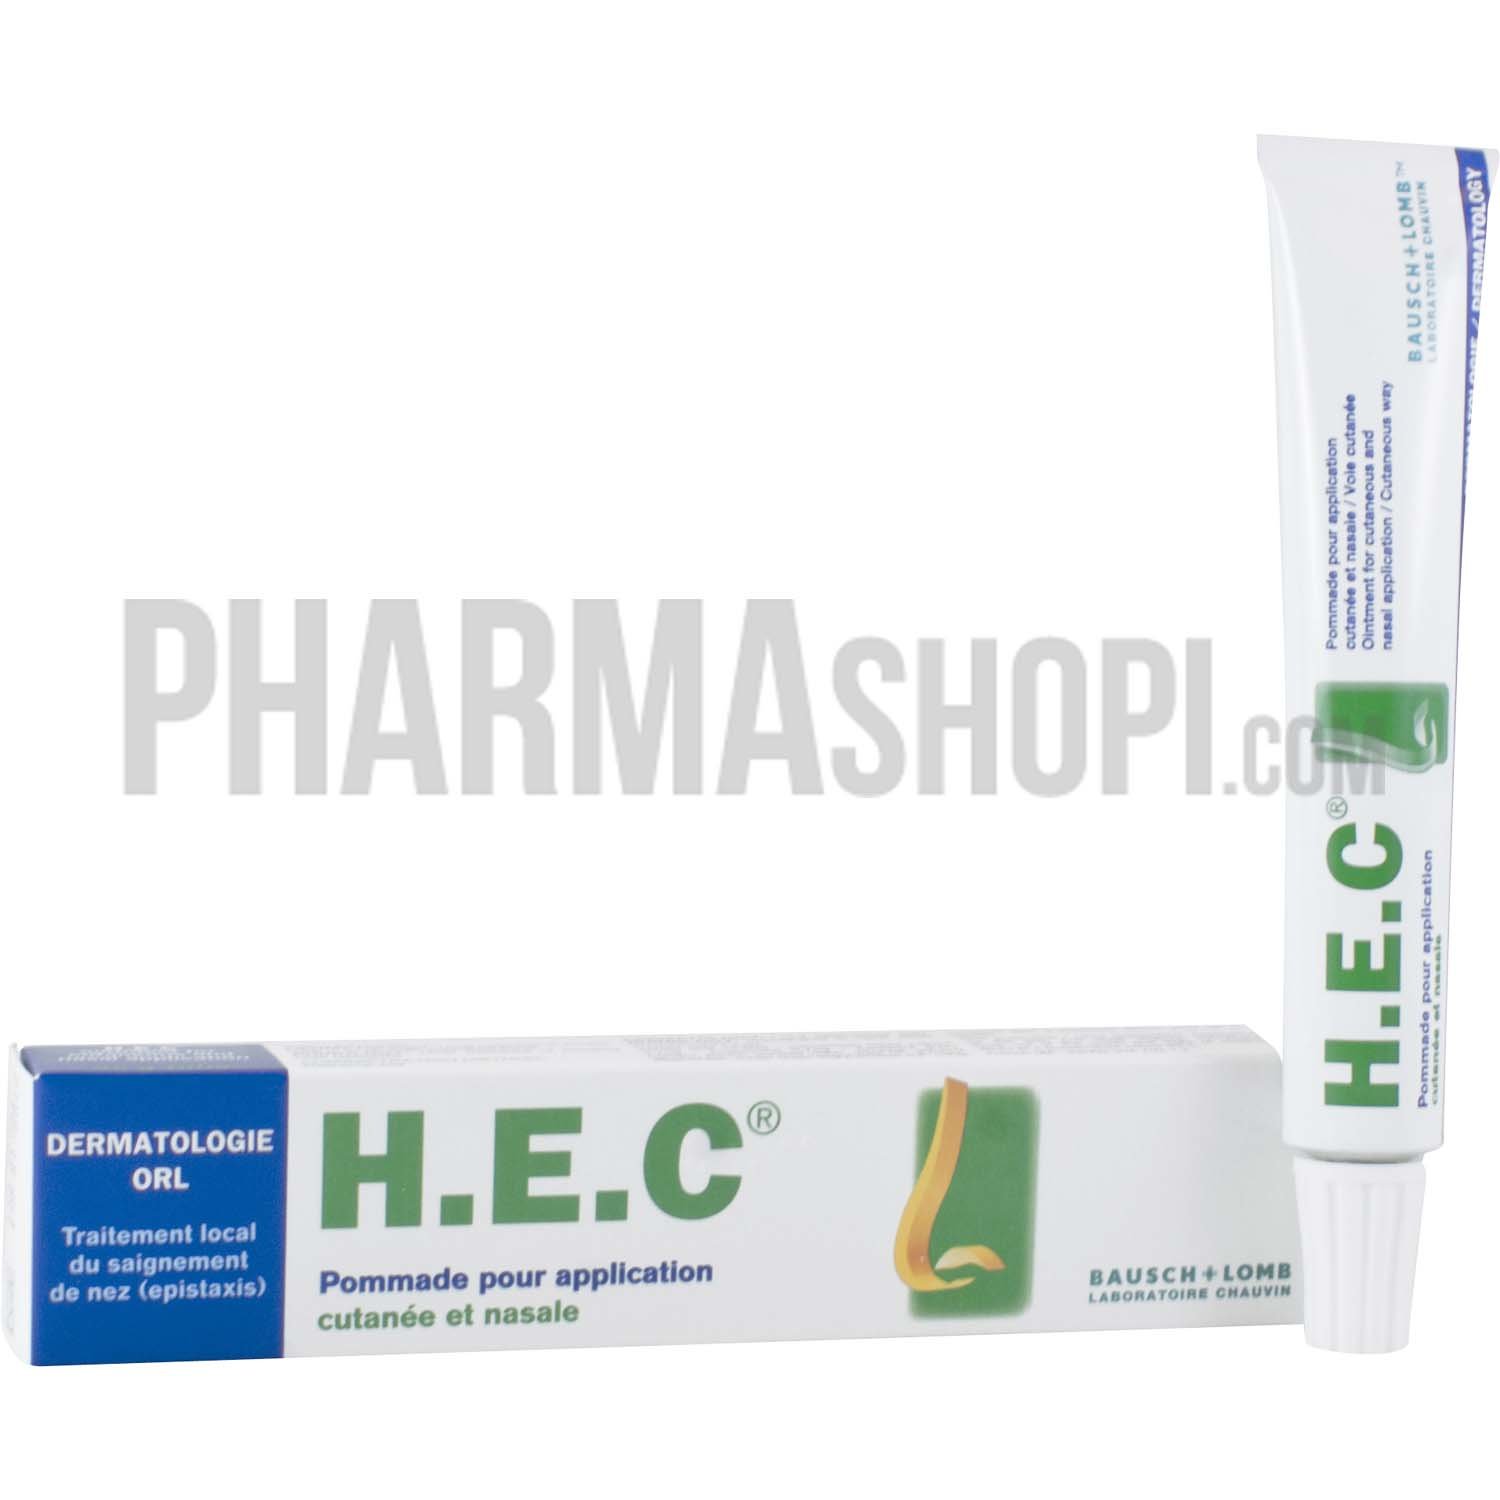 H.E.C pommade pour application cutanée et nasale, Tube de 25g